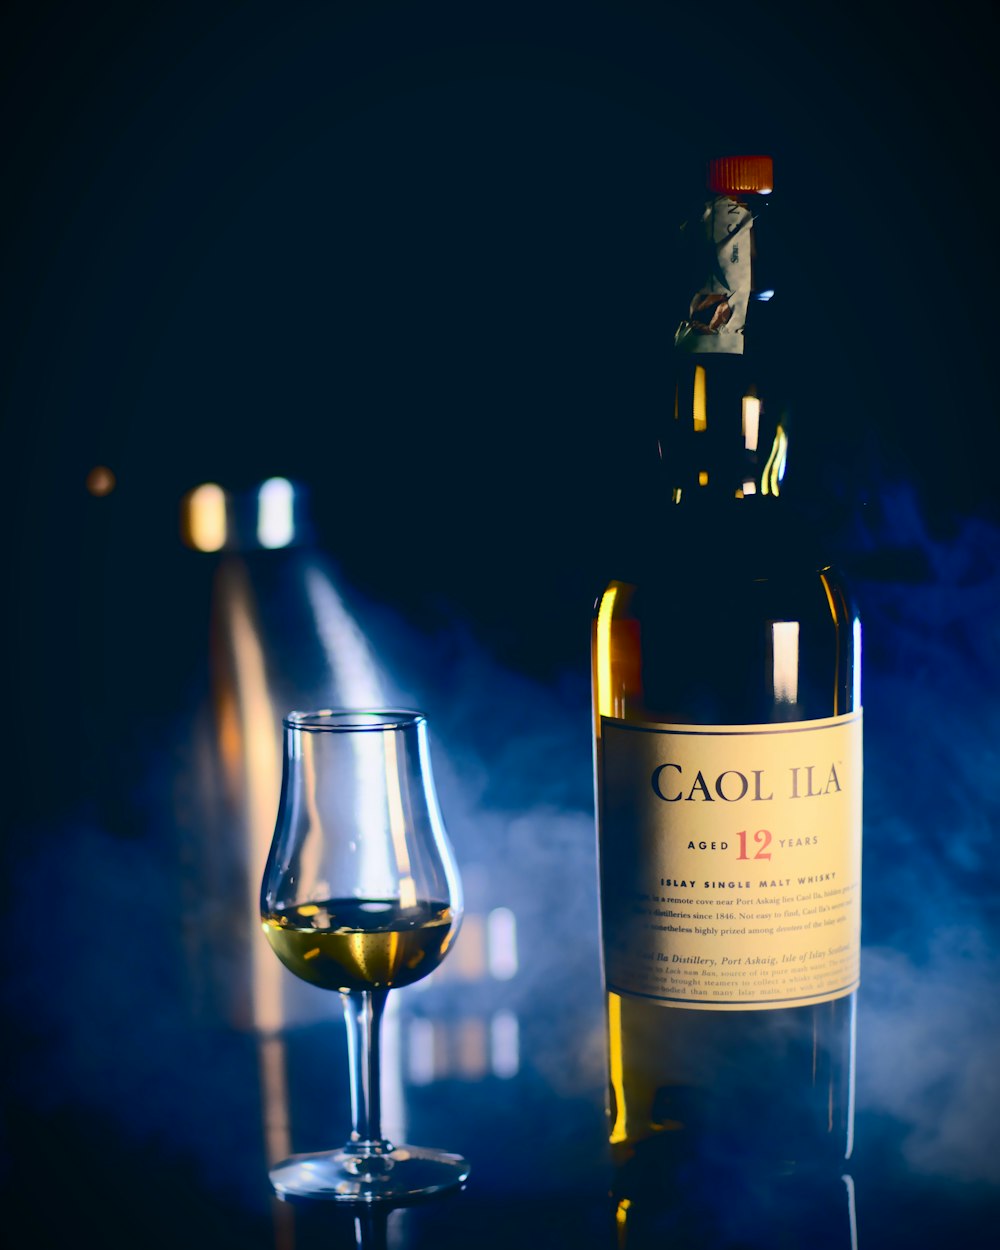 Caol Ila bottle near wine glass